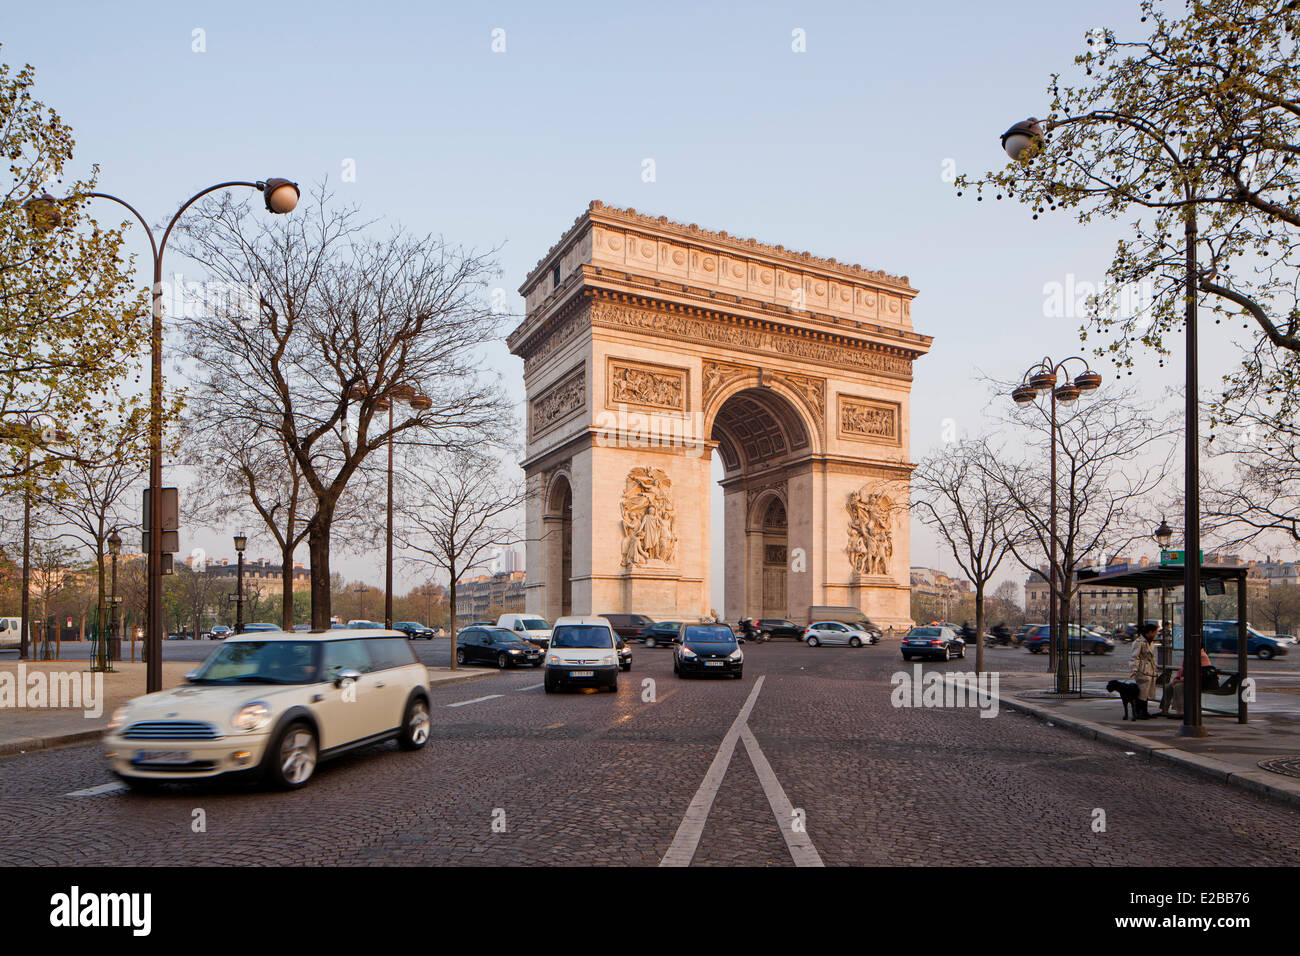 France, Paris, Arc de Triomphe on Place de l'Etoile Stock Photo